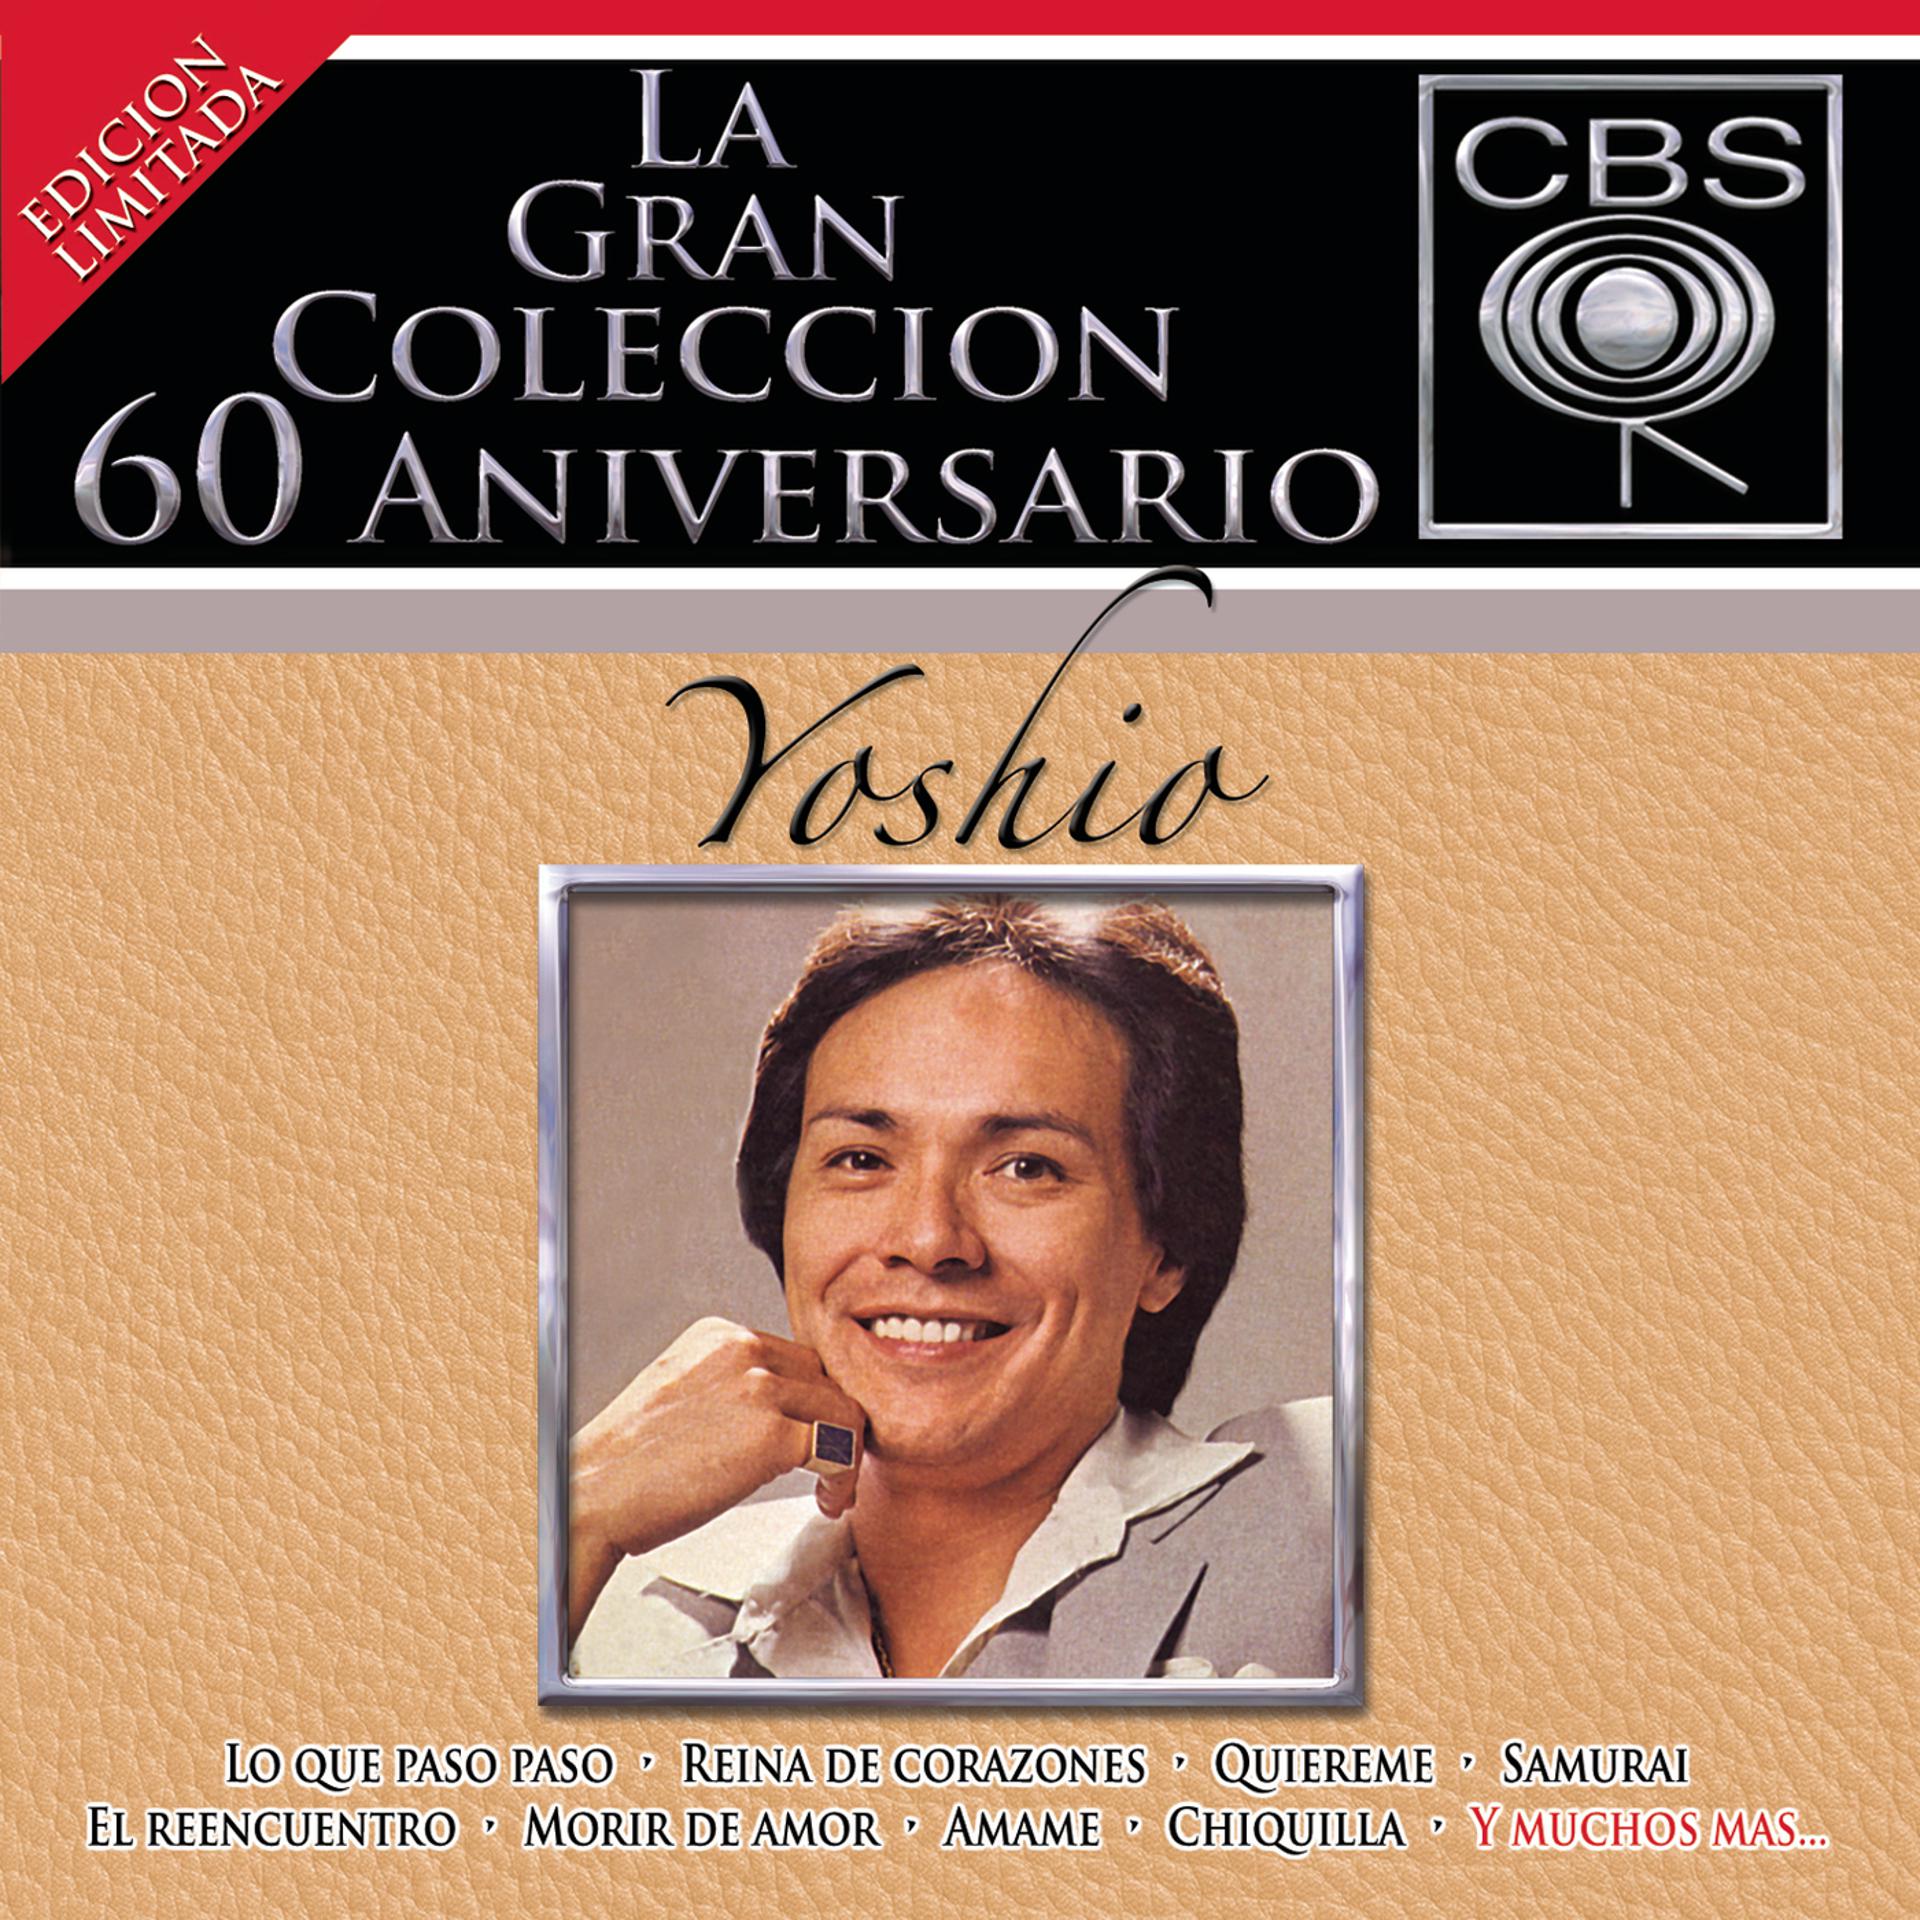 Постер альбома La Gran Coleccion Del 60 Aniversario CBS - Yoshio